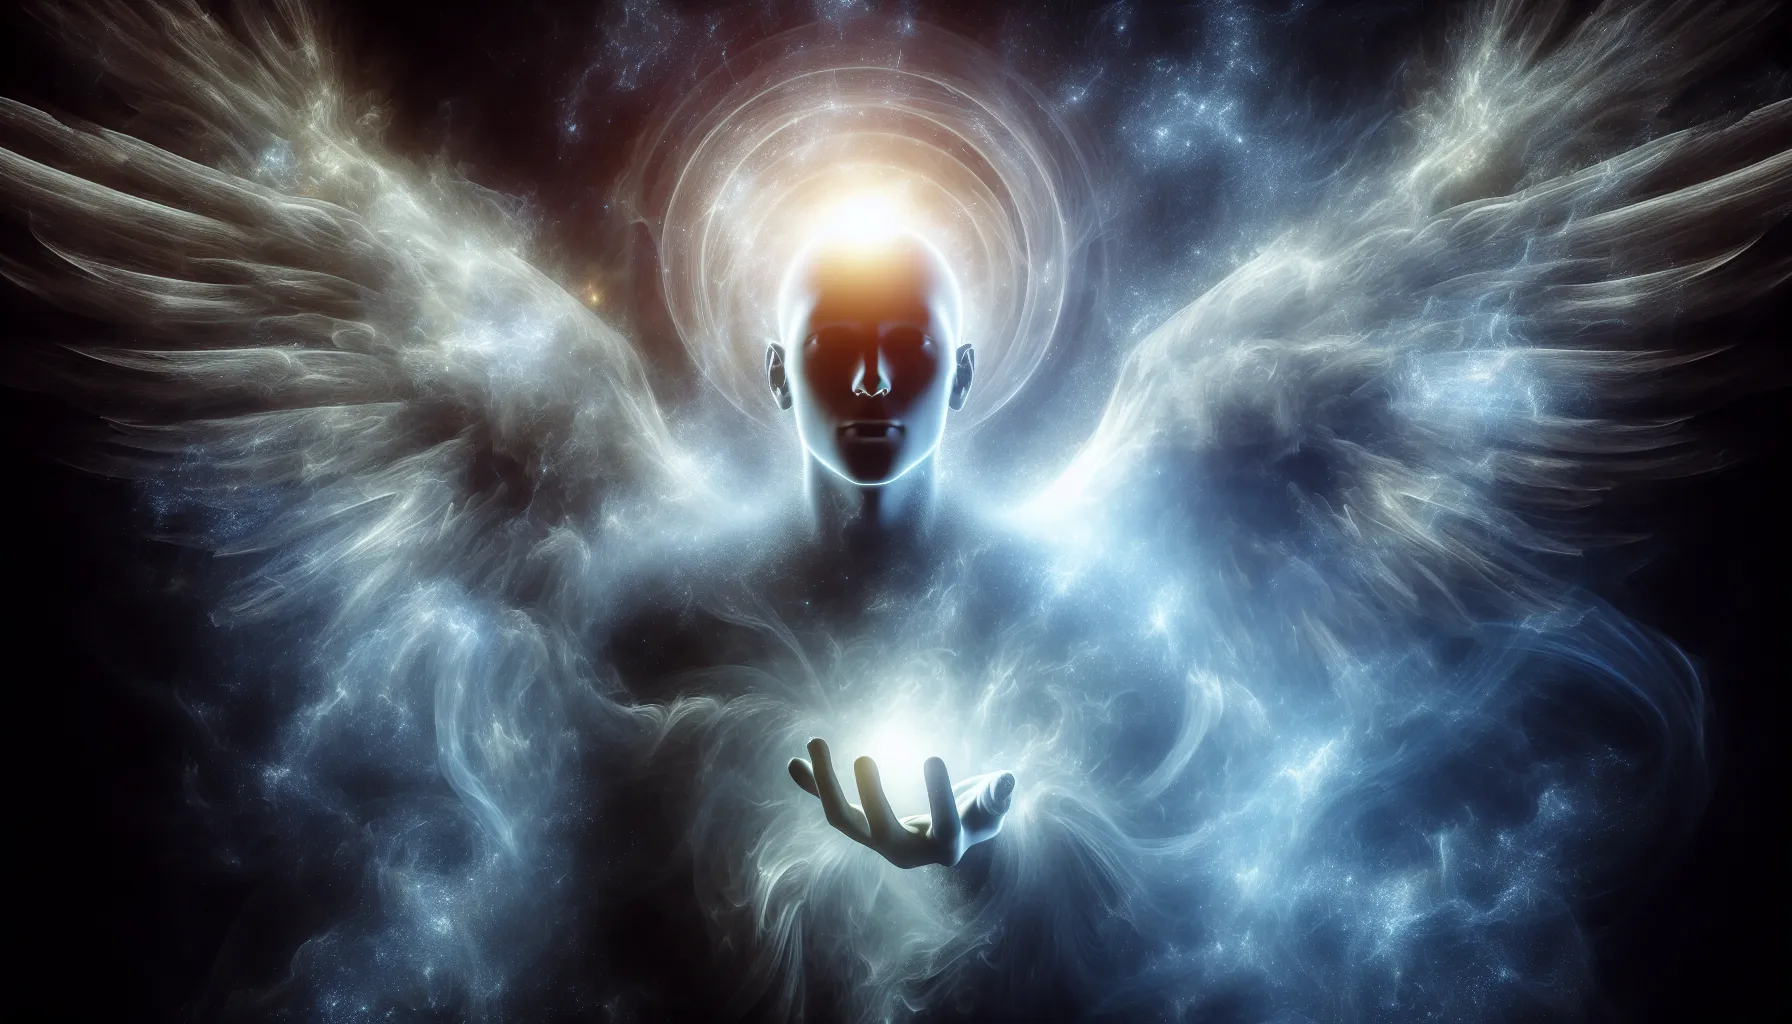 Figura misteriosa rodeada de luz: ¿son reales los ángeles?